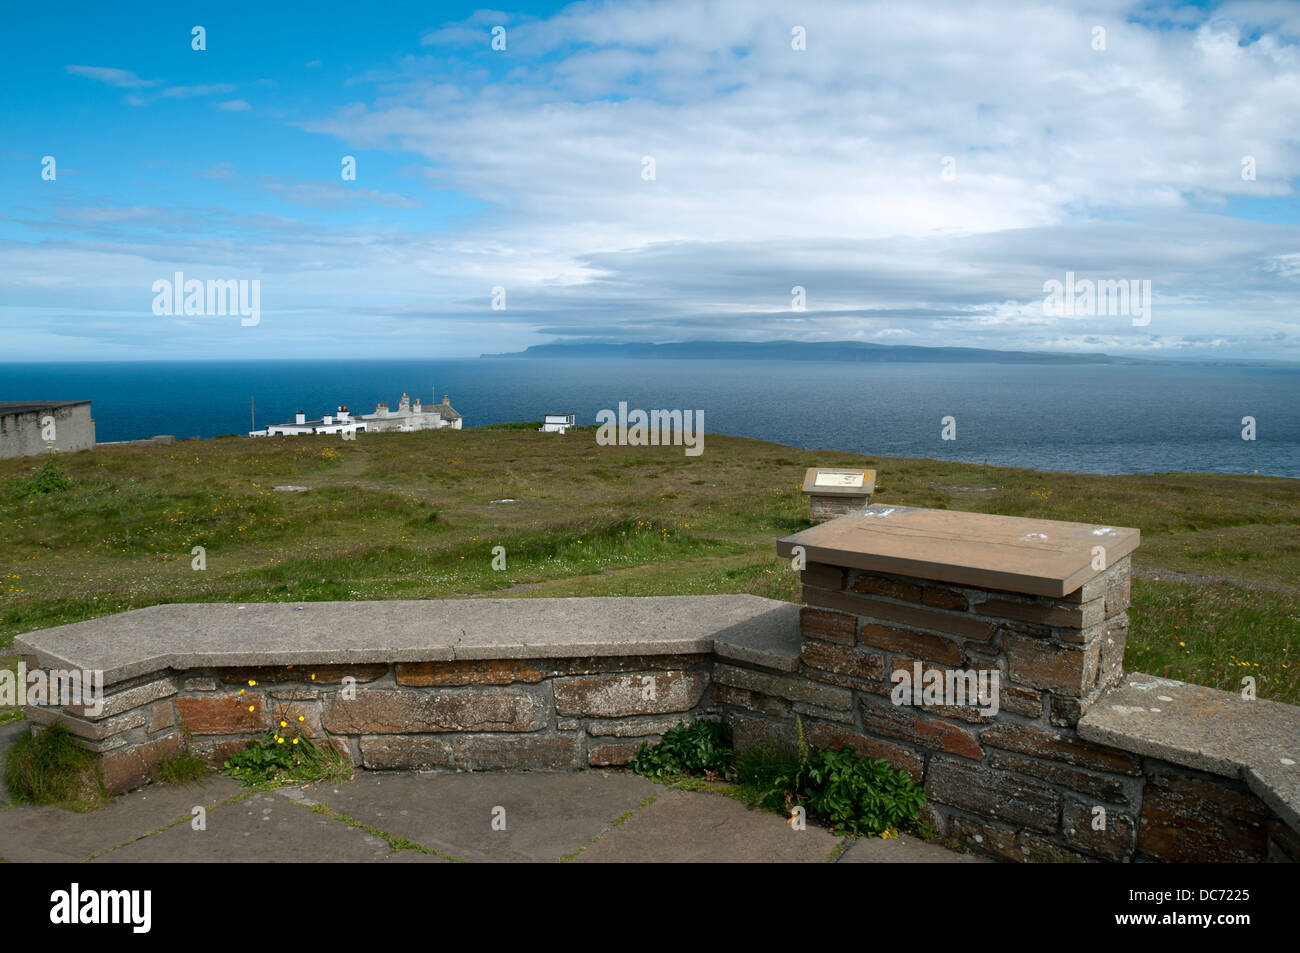 Hoy auf den Orkney-Inseln von Dunnet Head, dem nördlichsten Punkt des britischen Festlands.  Caithness, Schottland. Stockfoto